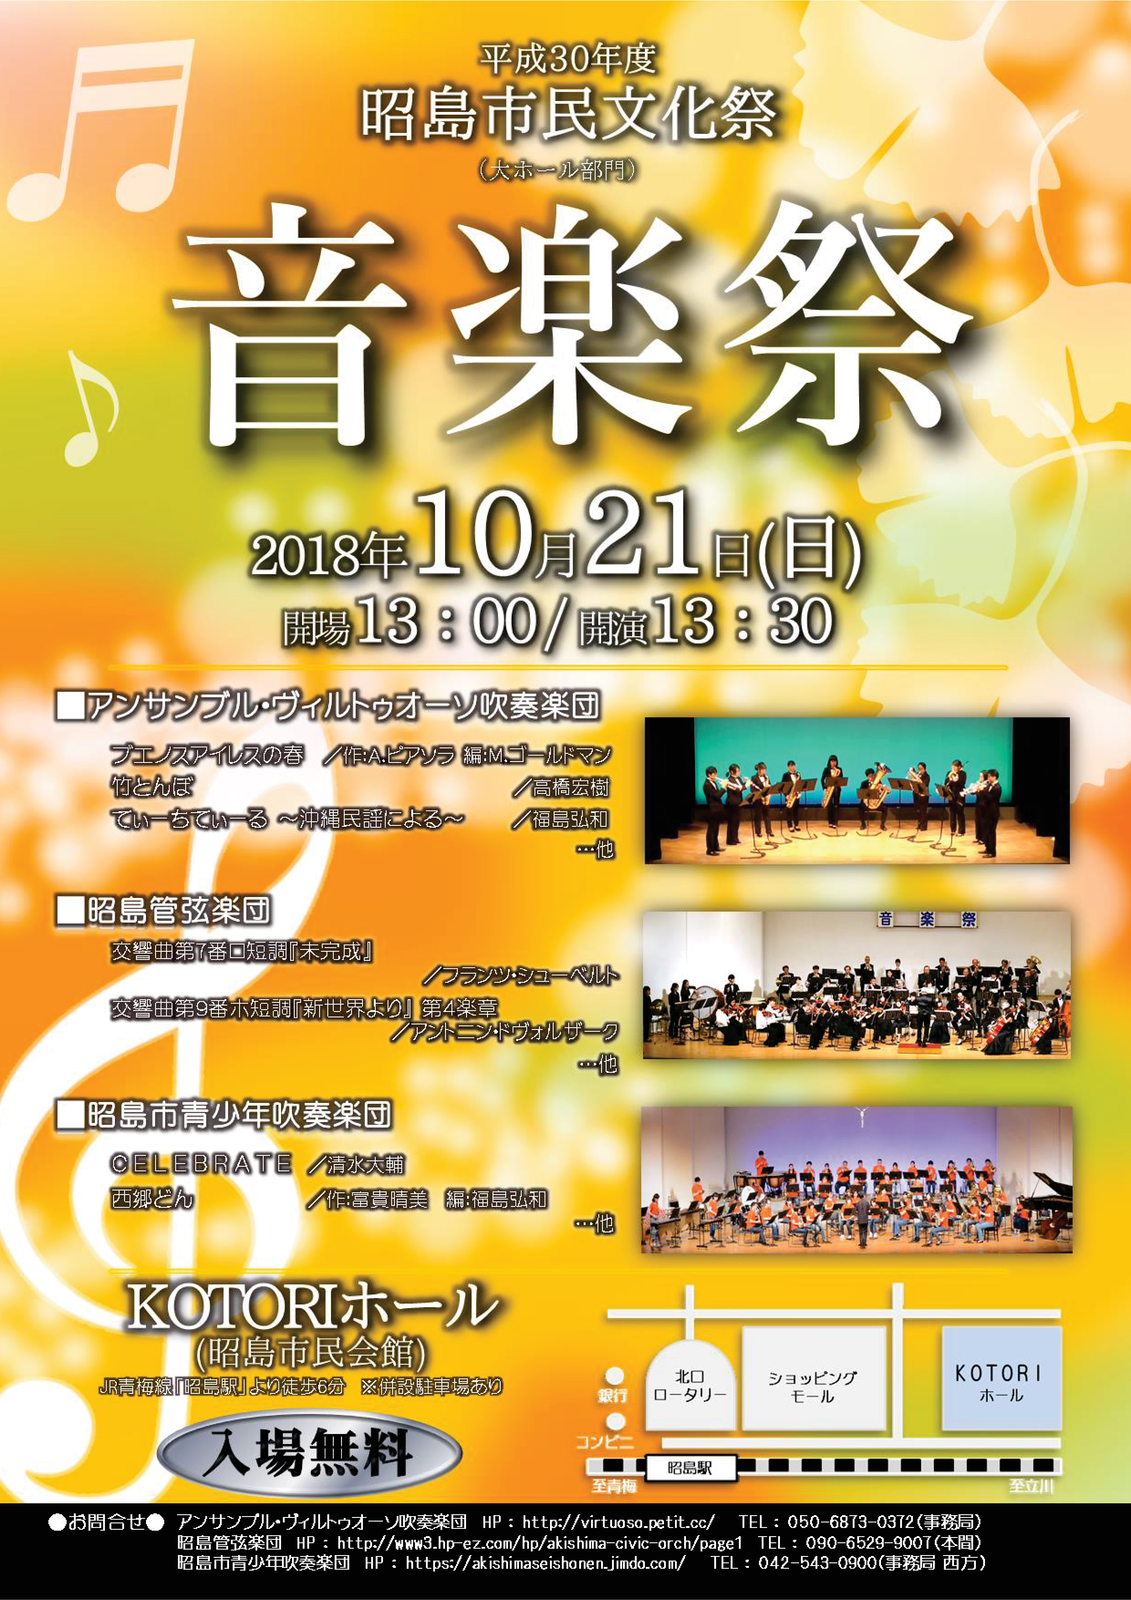 ■昭島市民文化祭 音楽祭のお知らせ